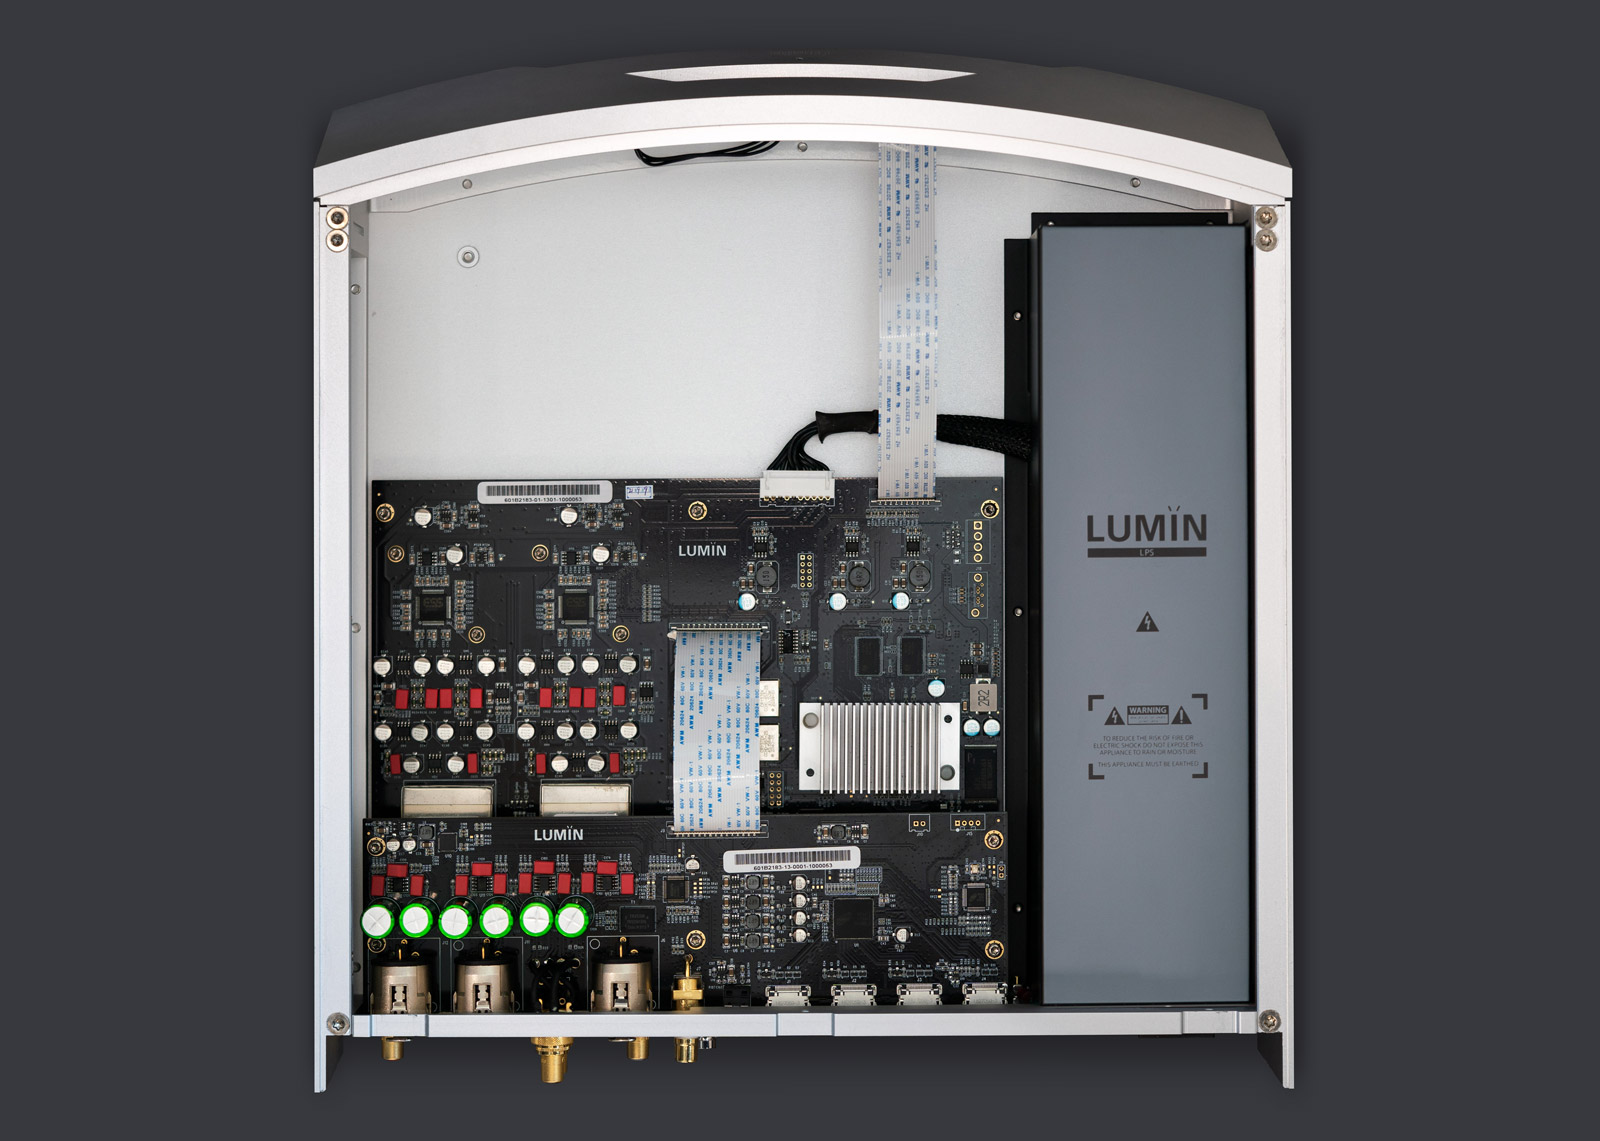 Lumin P1 Netzwerkplayer / DAC mit Vorstufe